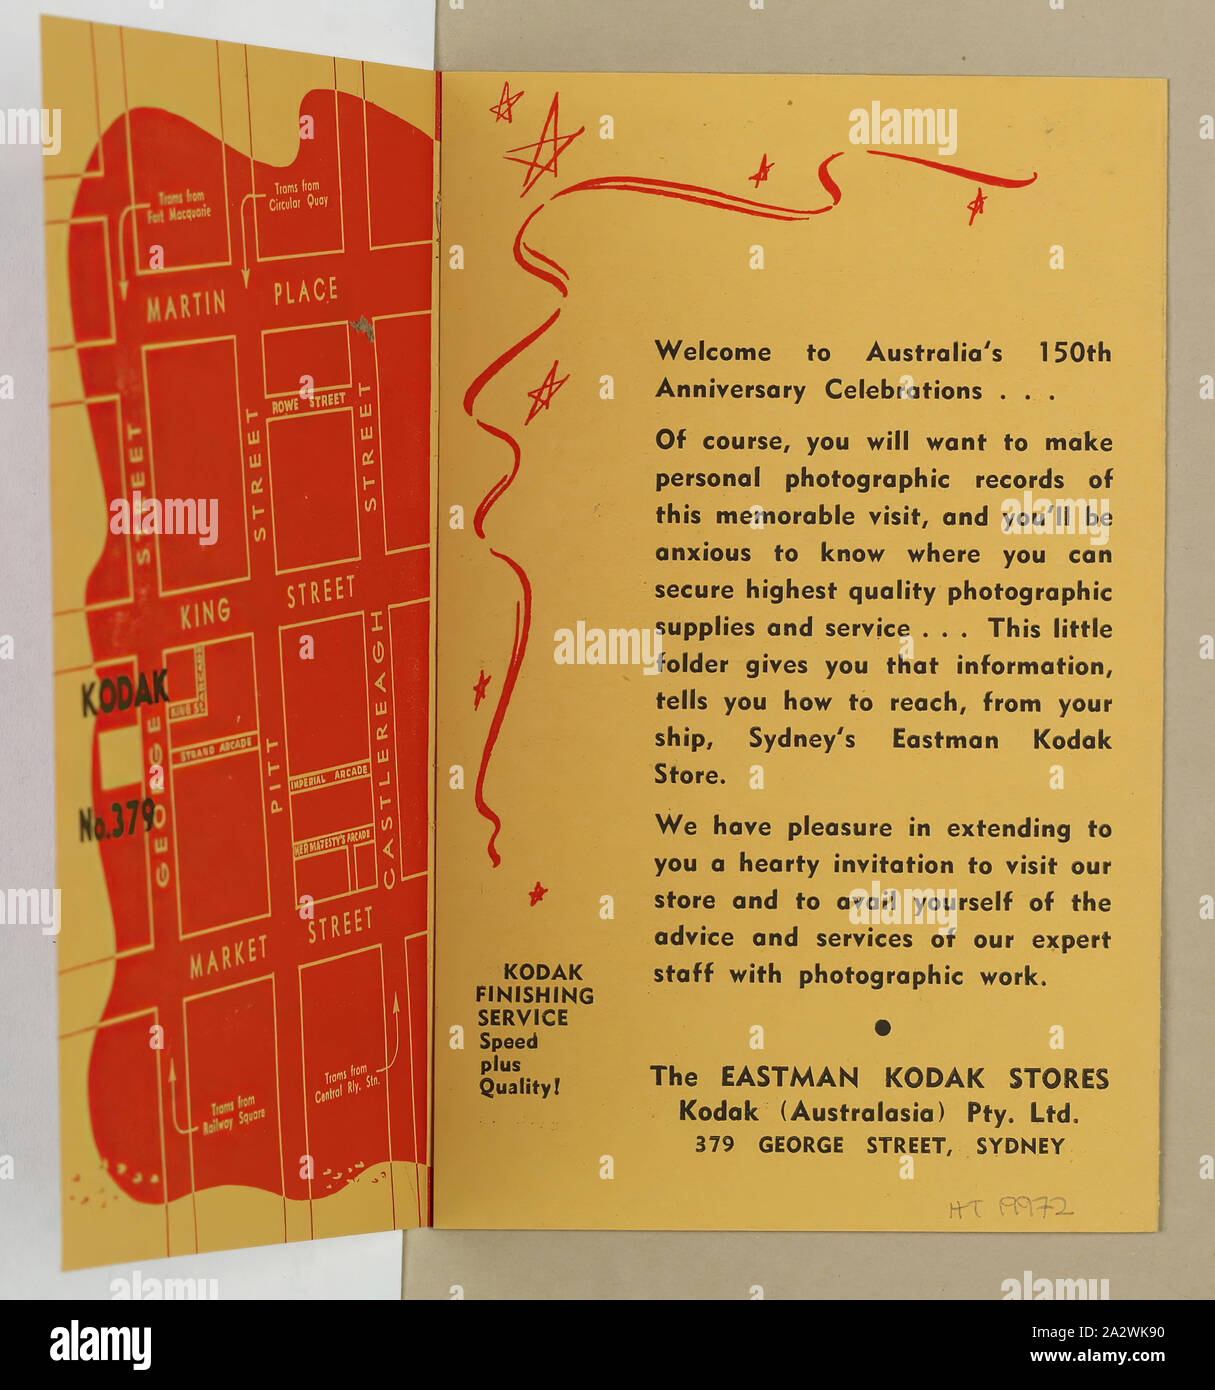 Folleto - Kodak Australasia Pty Ltd, "una bienvenida y alguna información que darás la bienvenida', George St, Sydney,1938, Doble folleto titulado "Una Bienvenida y alguna información que darás la bienvenida', que habrían sido distribuidos por la Kodak Australasia Pty Ltd almacenar en 379 George Street sydney a diversos visitantes llegan al país a través de ship en 1938 por el australiano '150 Aniversario' celebraciones. El folleto se dirige a los lectores a su tienda, proporciona un mapa de Sydney con Kodak y moneda detalles Foto de stock